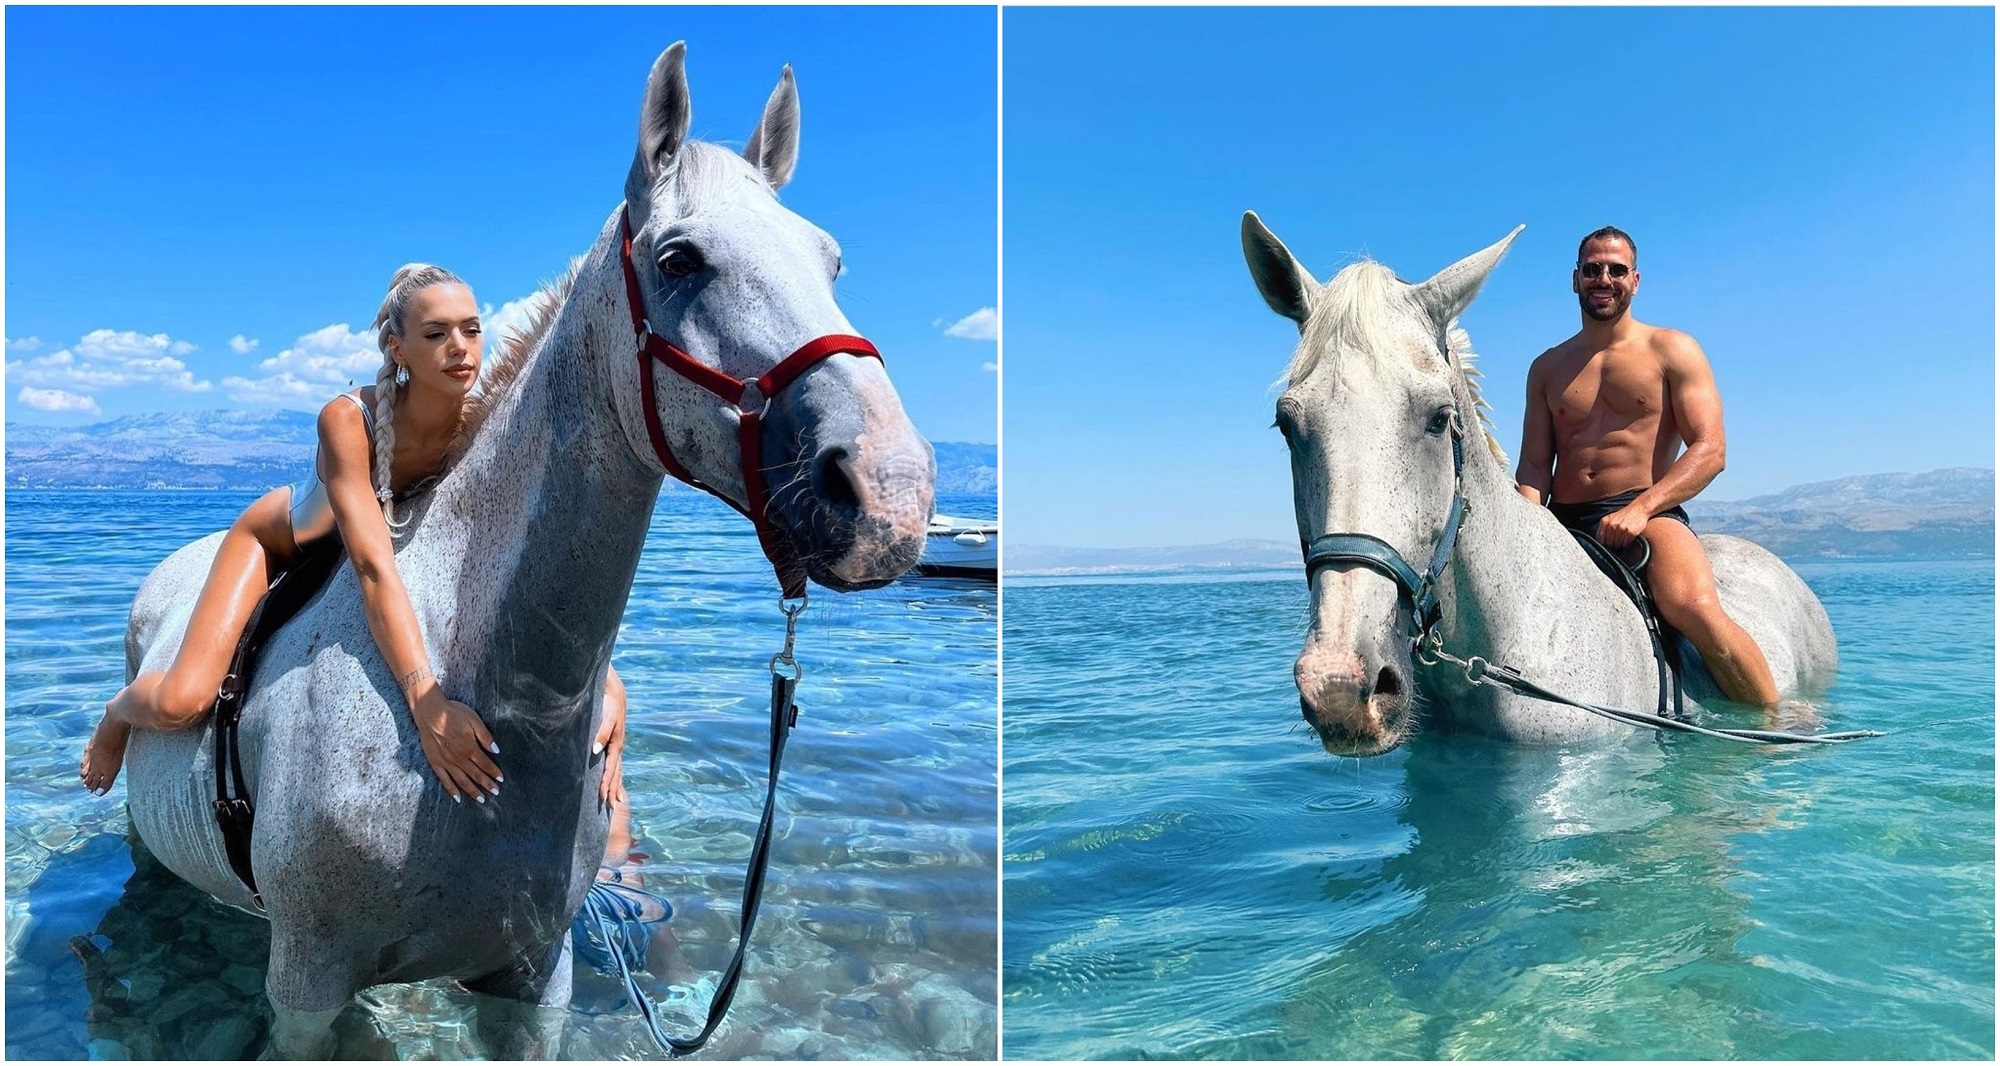 Plivanje s konjima novi hit na Instagramu - dostupno i na Braču - Zagorje  International | Saznajte više, informirajte se bolje